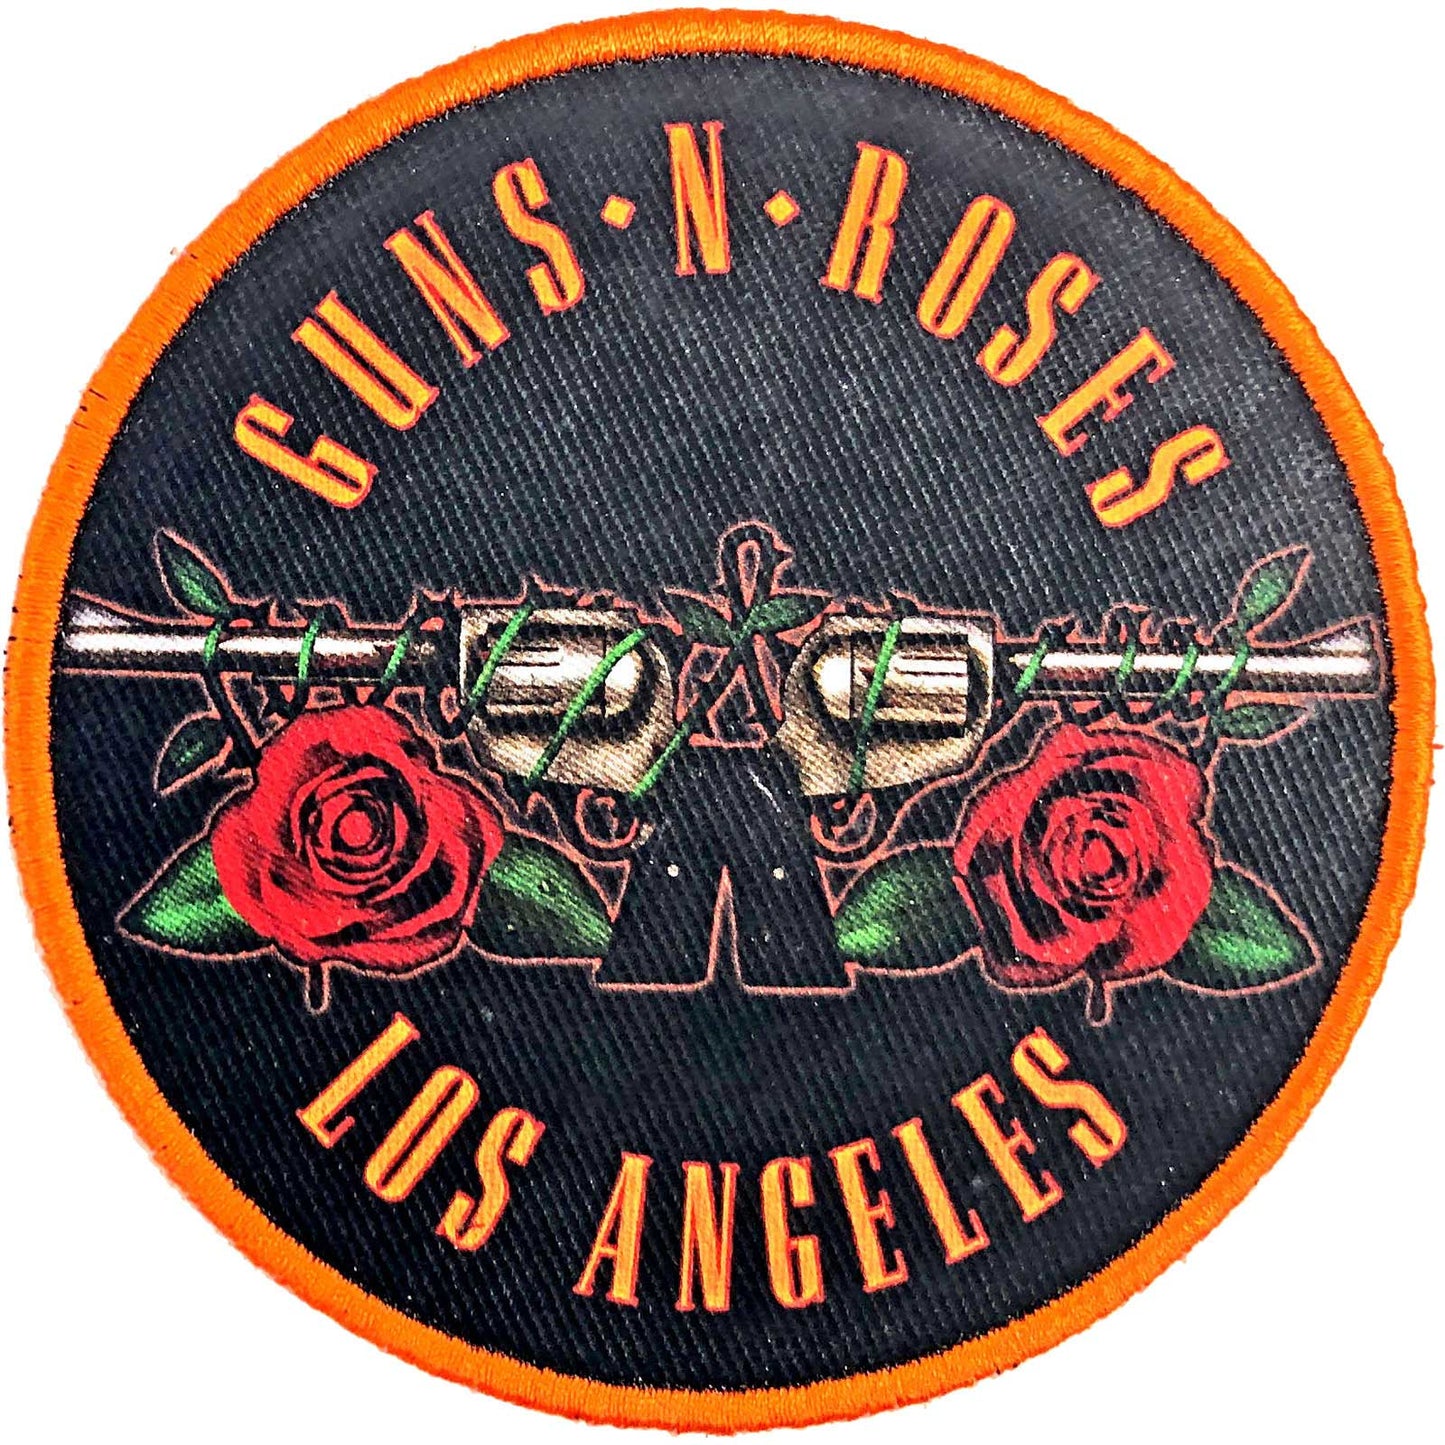 GUNS N' ROSES STANDARD PATCH: LOS ANGELES ORANGE